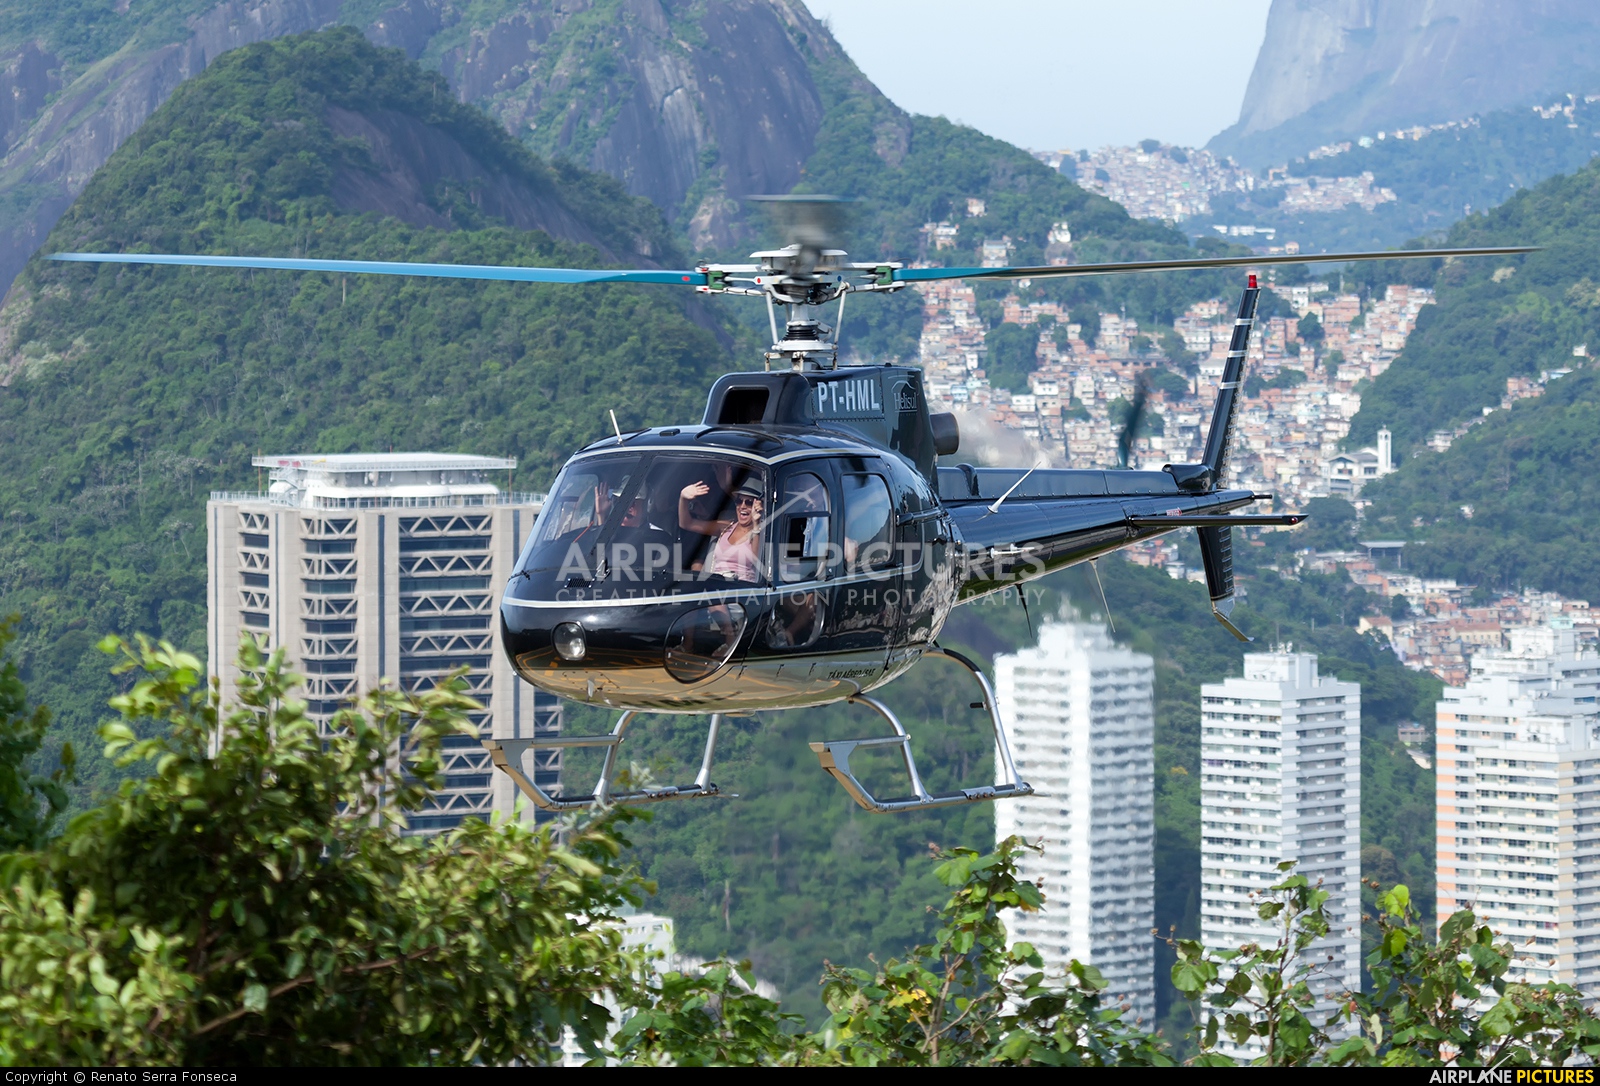 Helisul Táxi Aéreo PT-HML aircraft at Rio de Janeiro - Morro da Urca Heliport